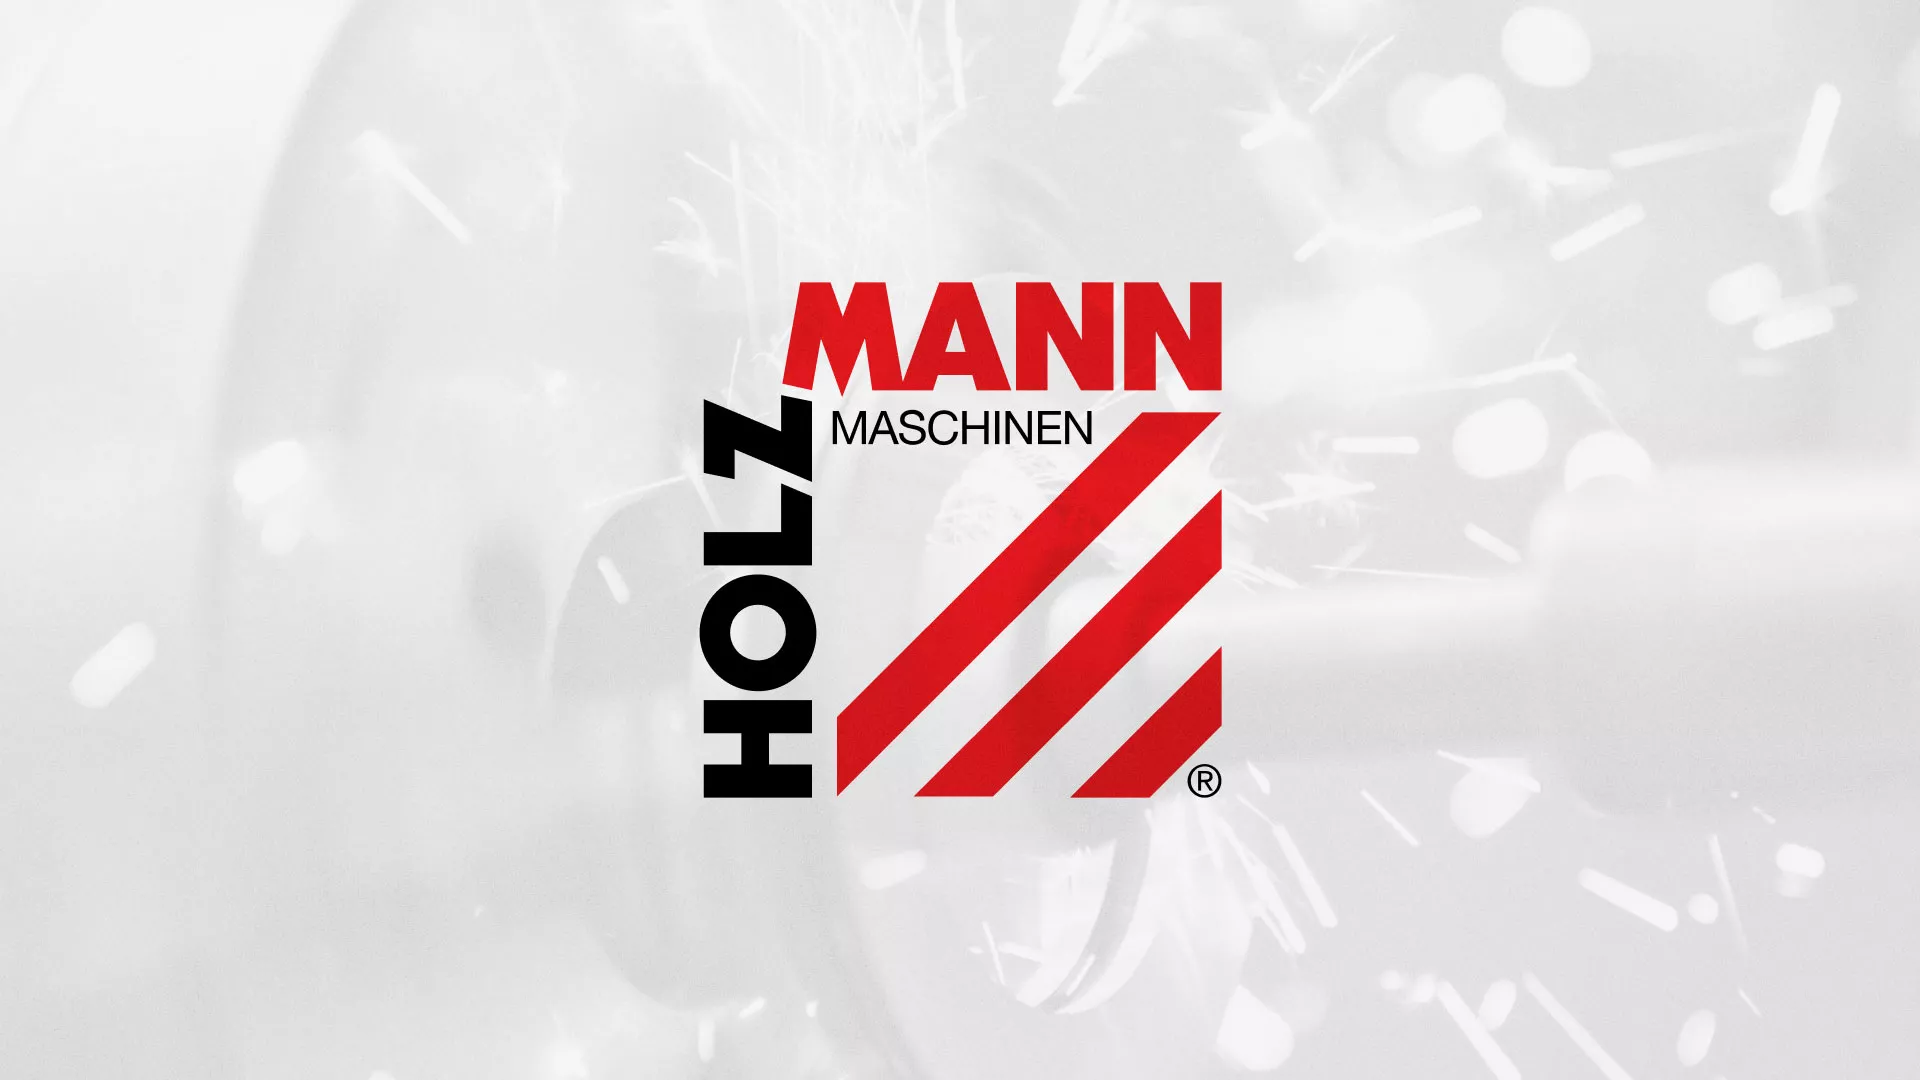 Создание сайта компании «HOLZMANN Maschinen GmbH» в Химках